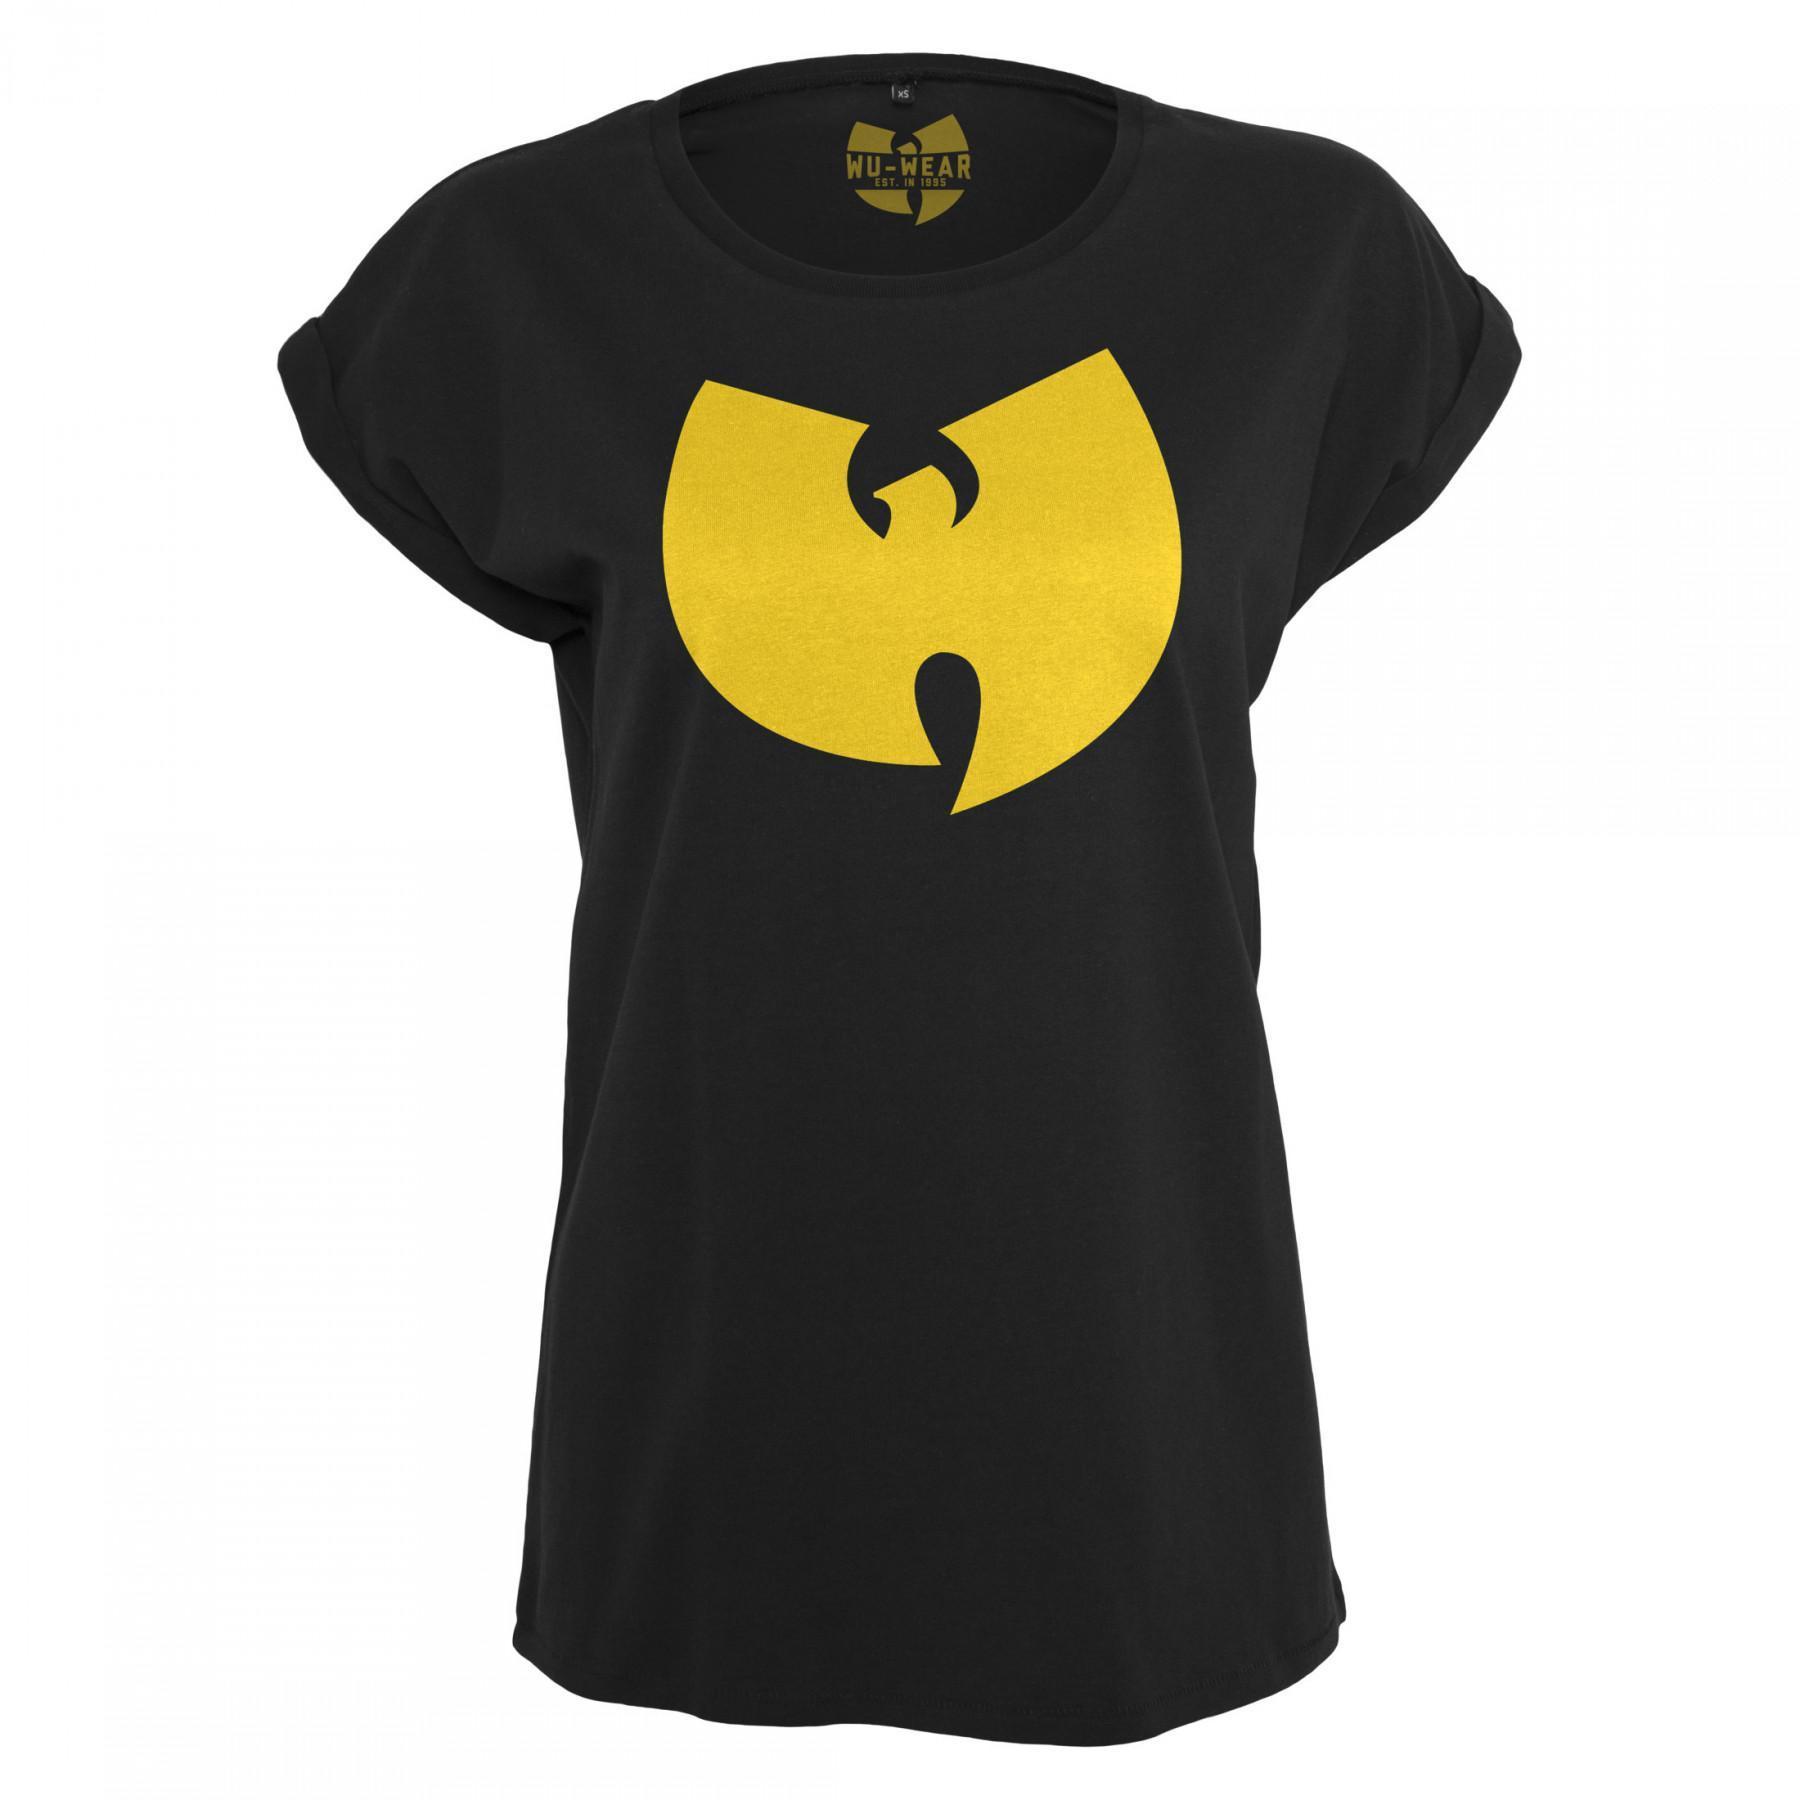 Damen-T-Shirt Wu-wear Logo